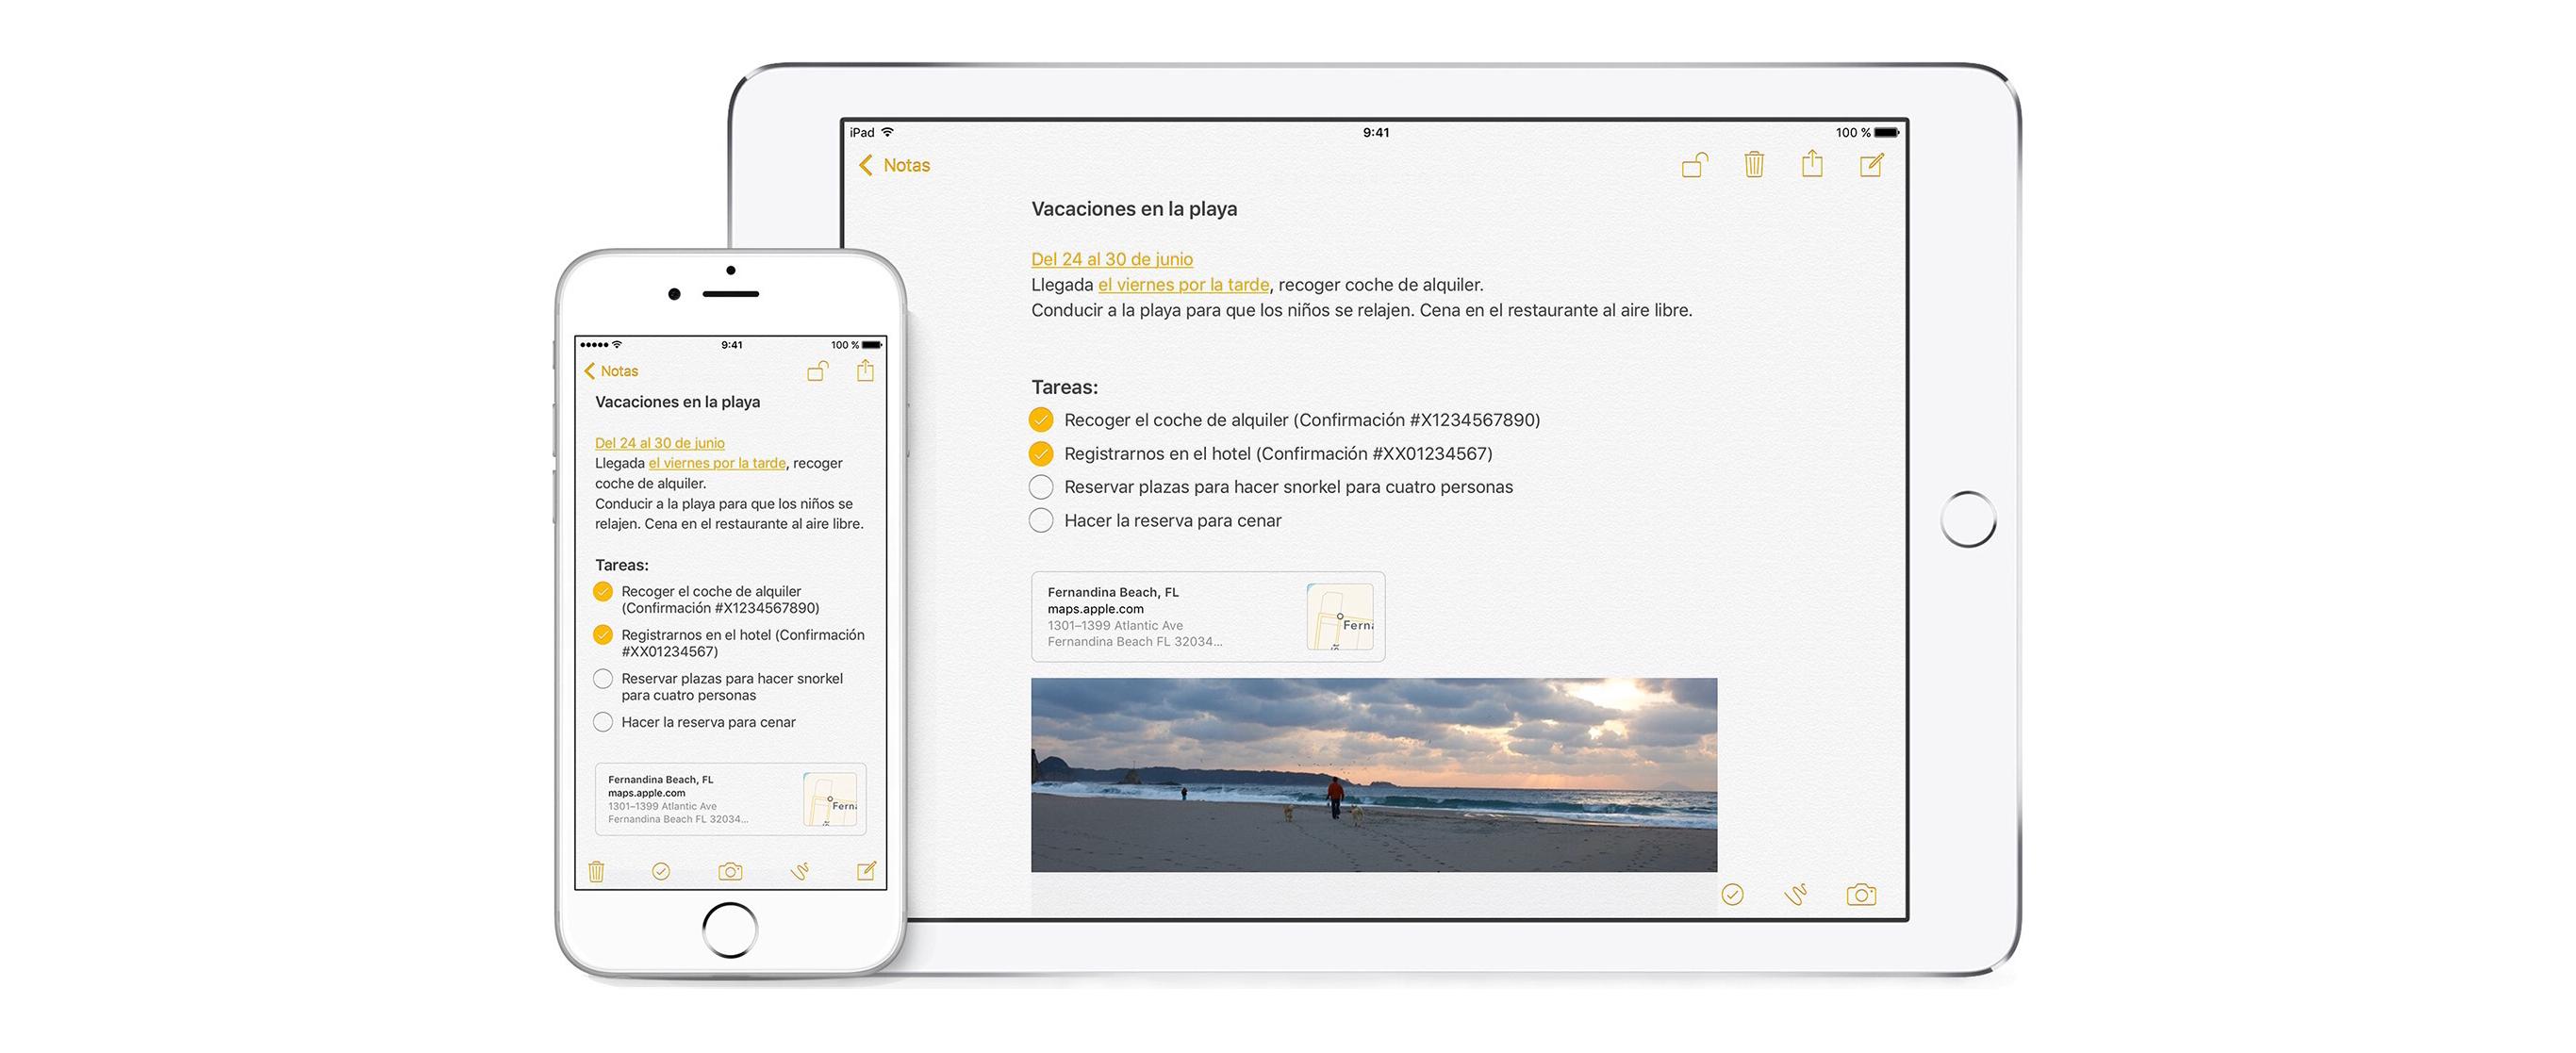 Ξεκινήστε το προσωπικό σας ημερολόγιο σε iPhone ή iPad με αυτές τις εφαρμογές